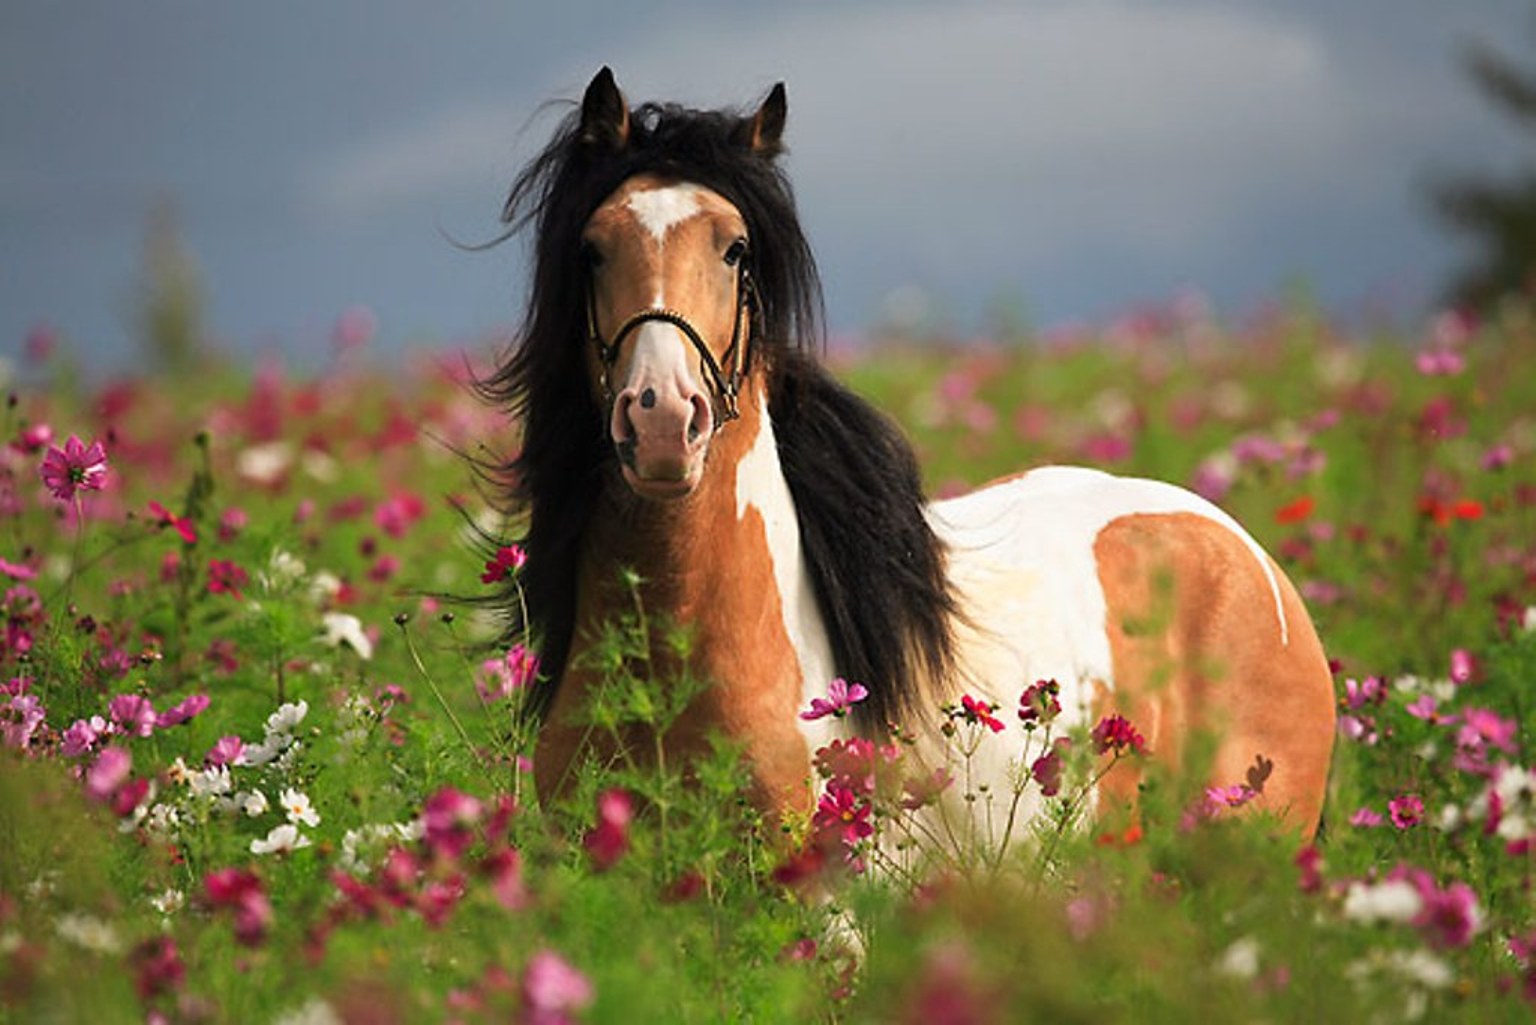 Horses are beautiful